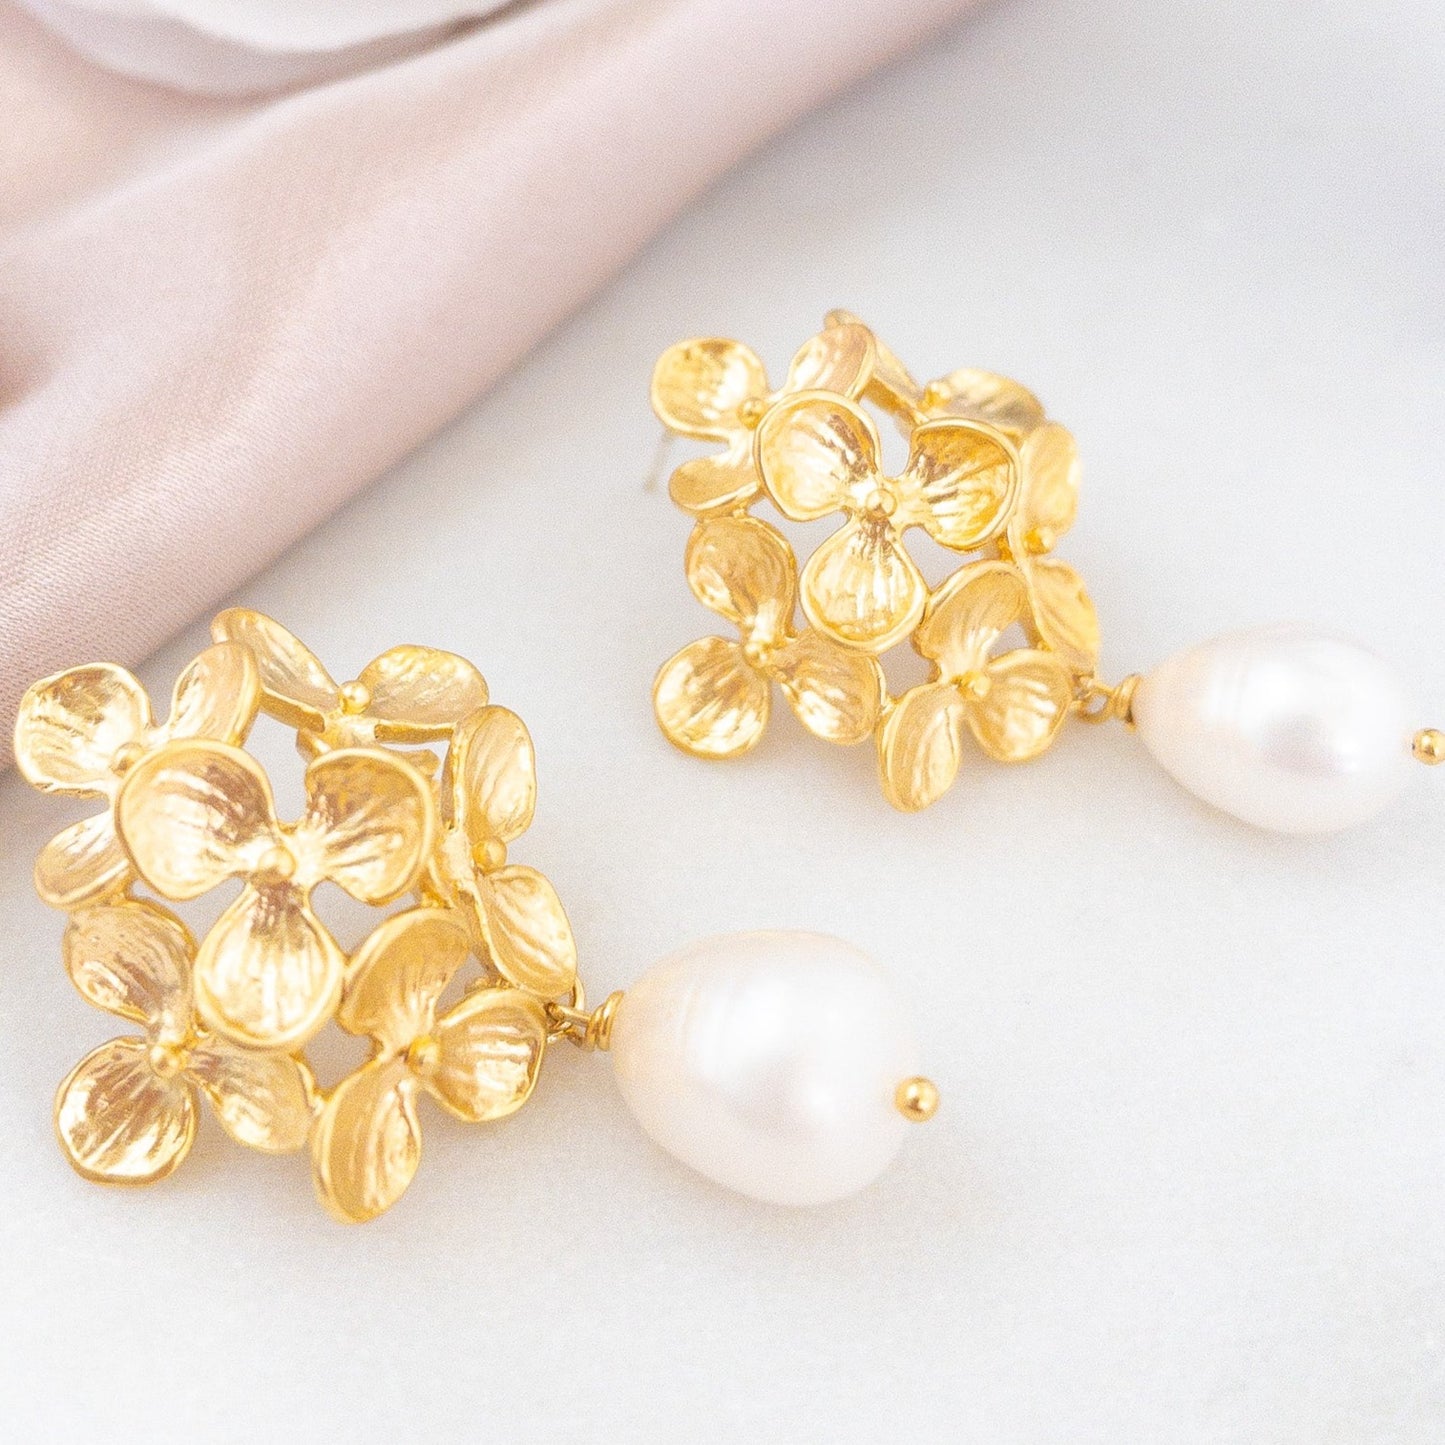 Hydrangea Flower Earrings with Freshwater Pearls